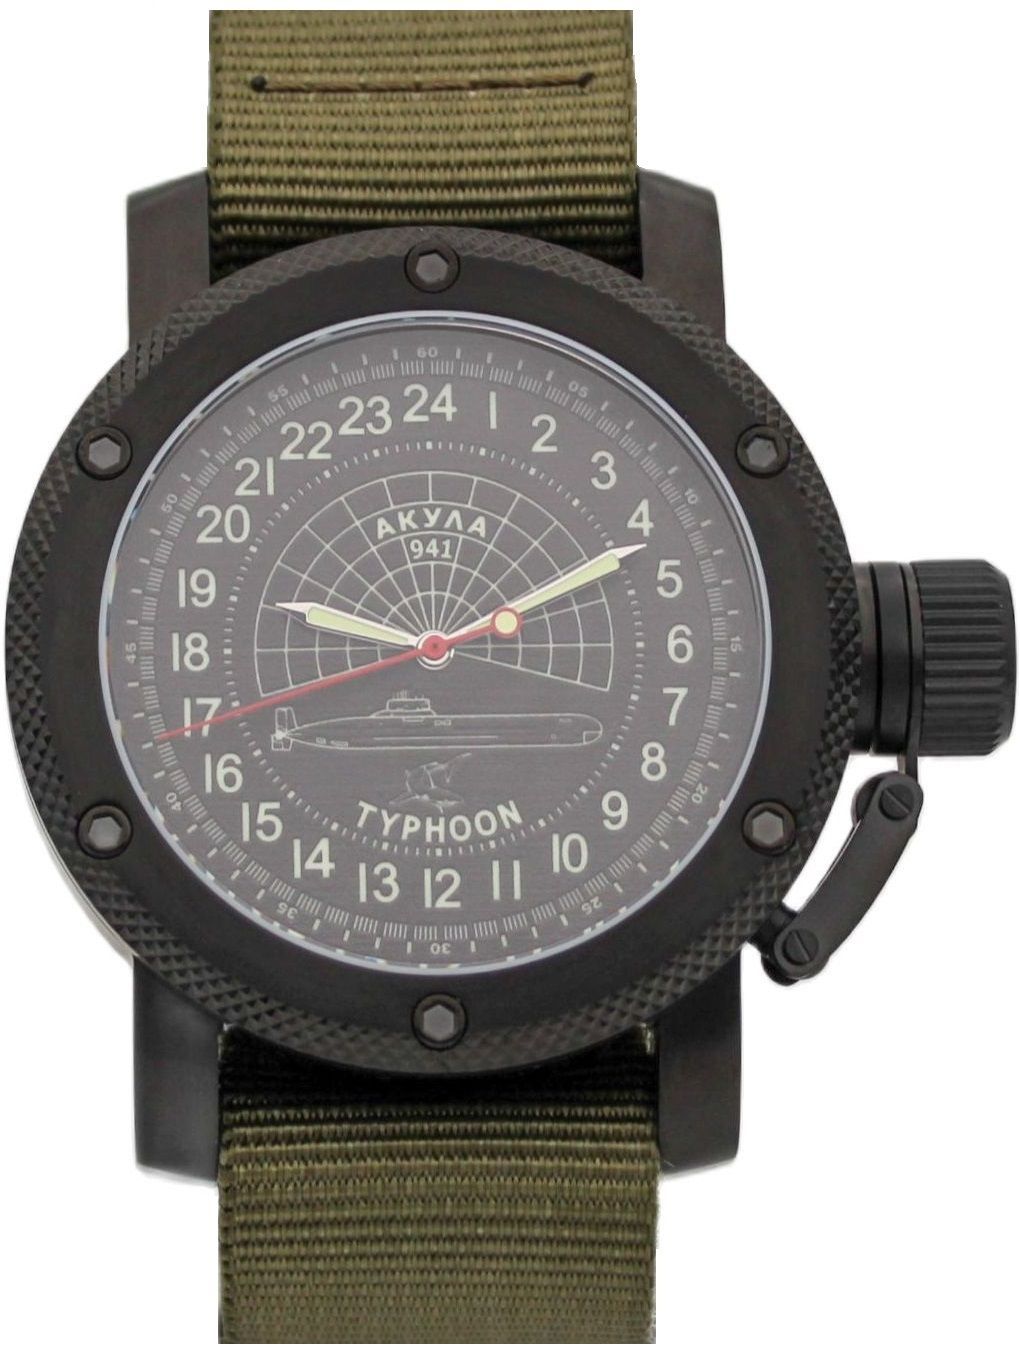 Часы941/Акула(Typhoon)механическиесавтоподзаводом(Восток2431)101.1145.21